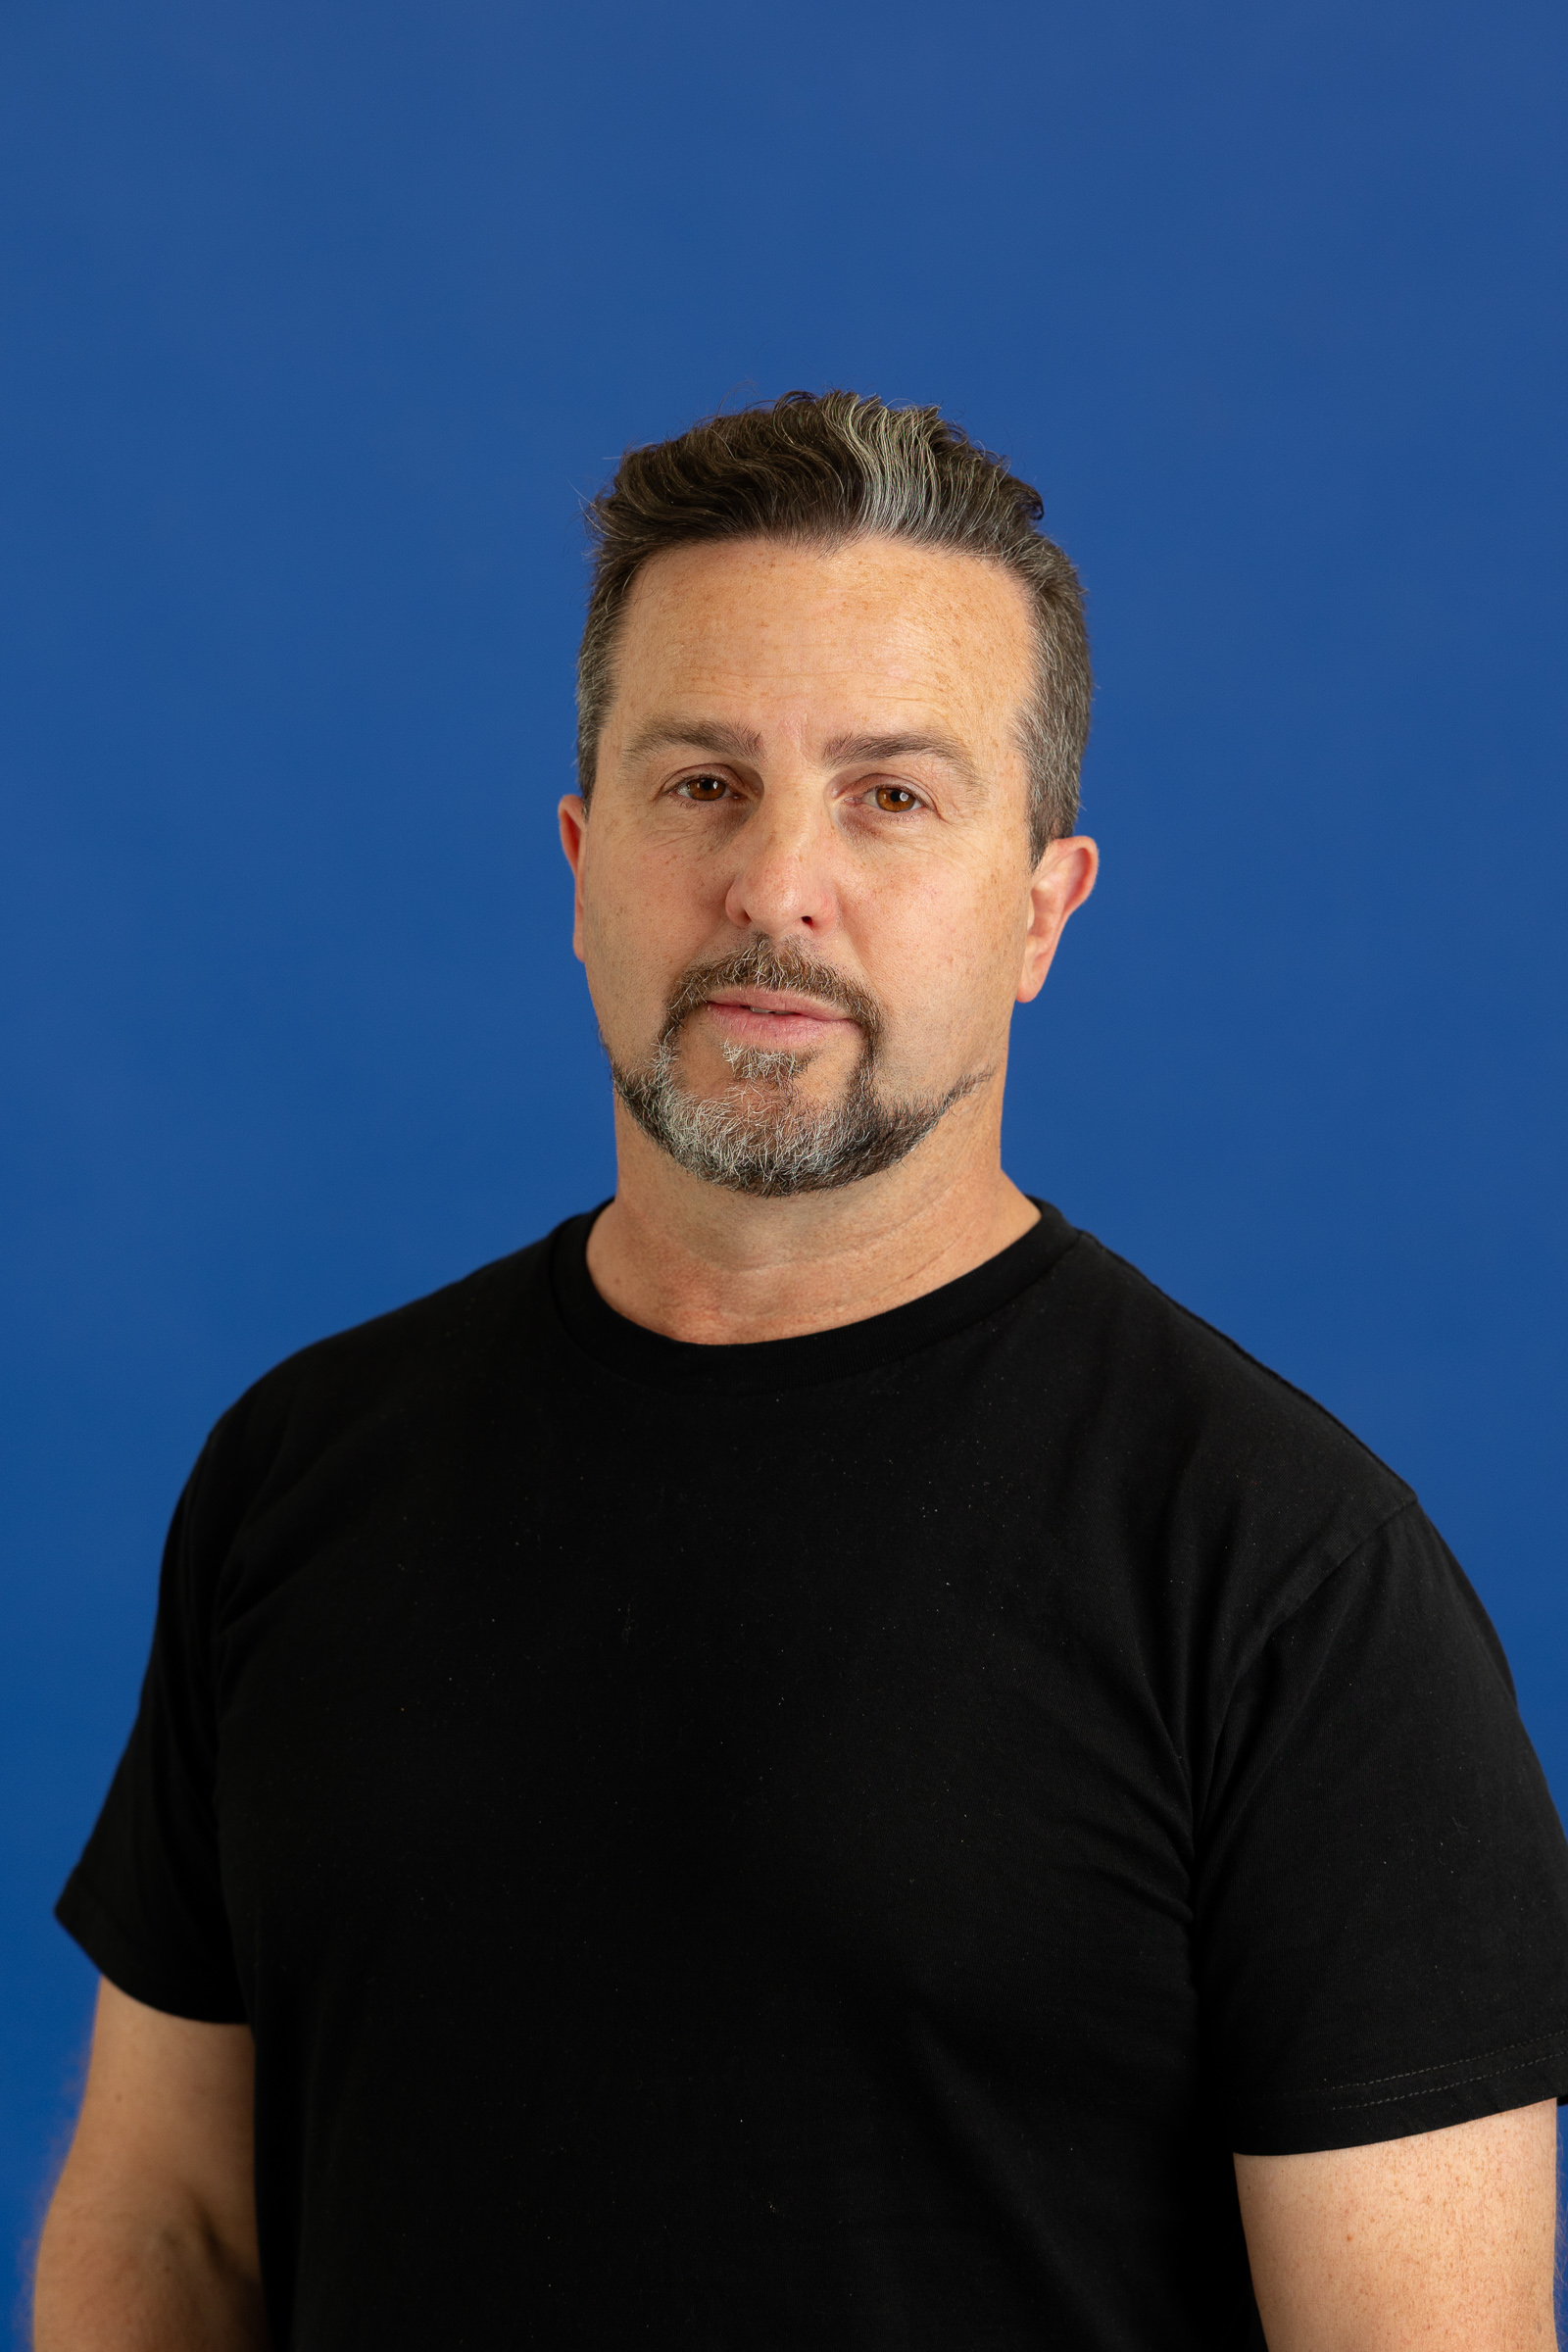 Andrew Mcpherson Headshot on blue background